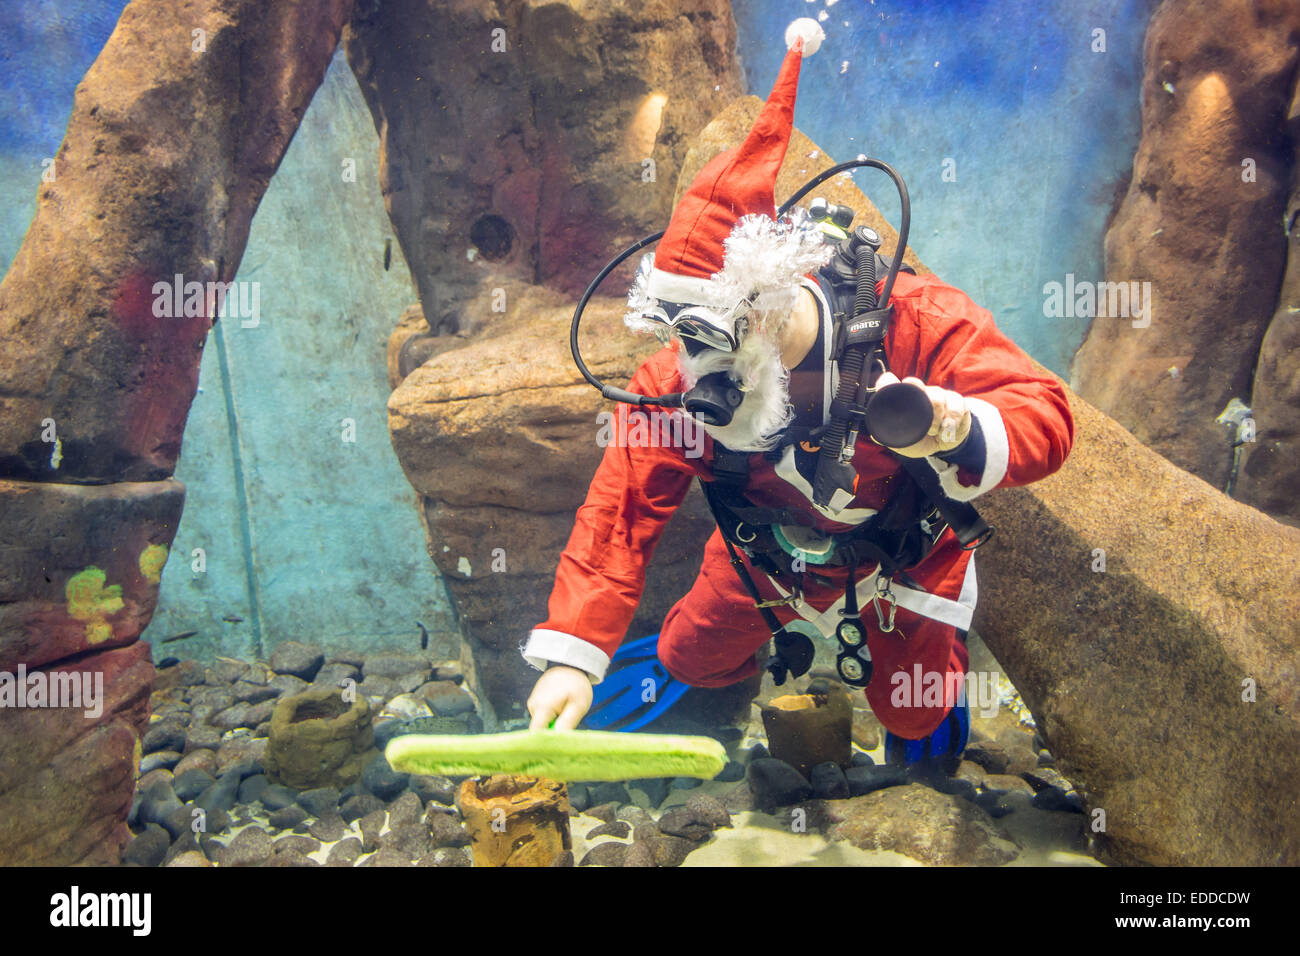 Sommozzatore rdessed come Santa clausola acquario pulizia Wroclaw Africarium Zoo Foto Stock